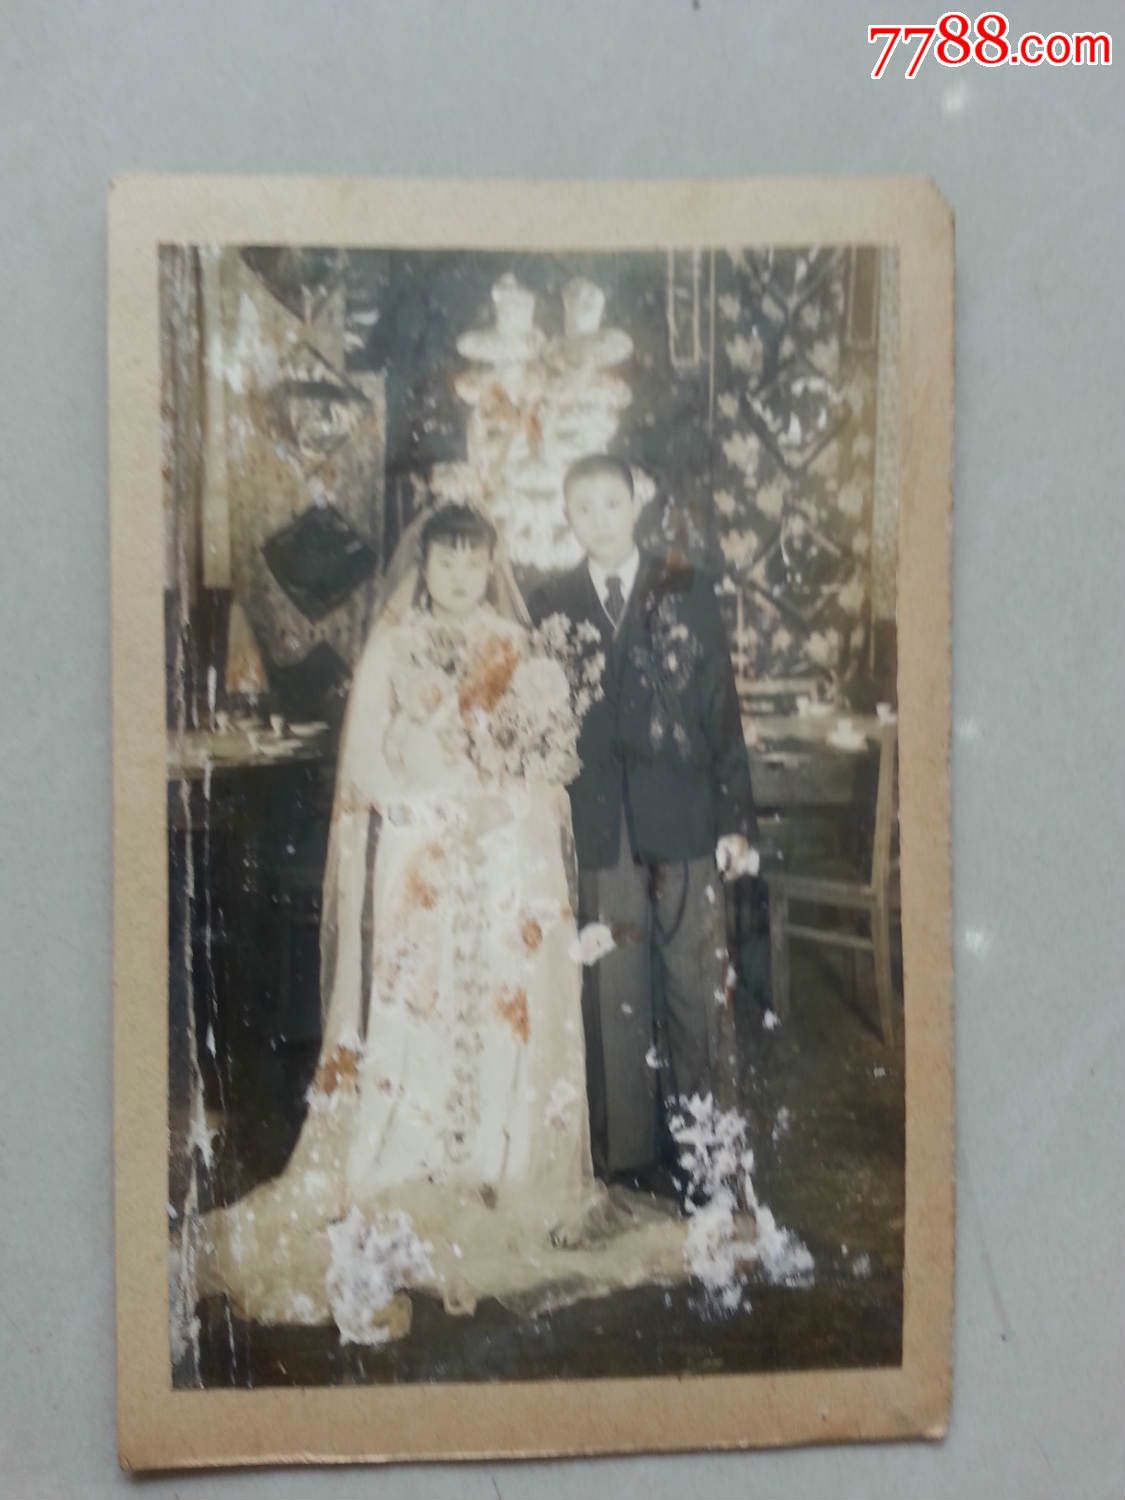 912哈尔滨结婚照片-价格:300元-se31364843-